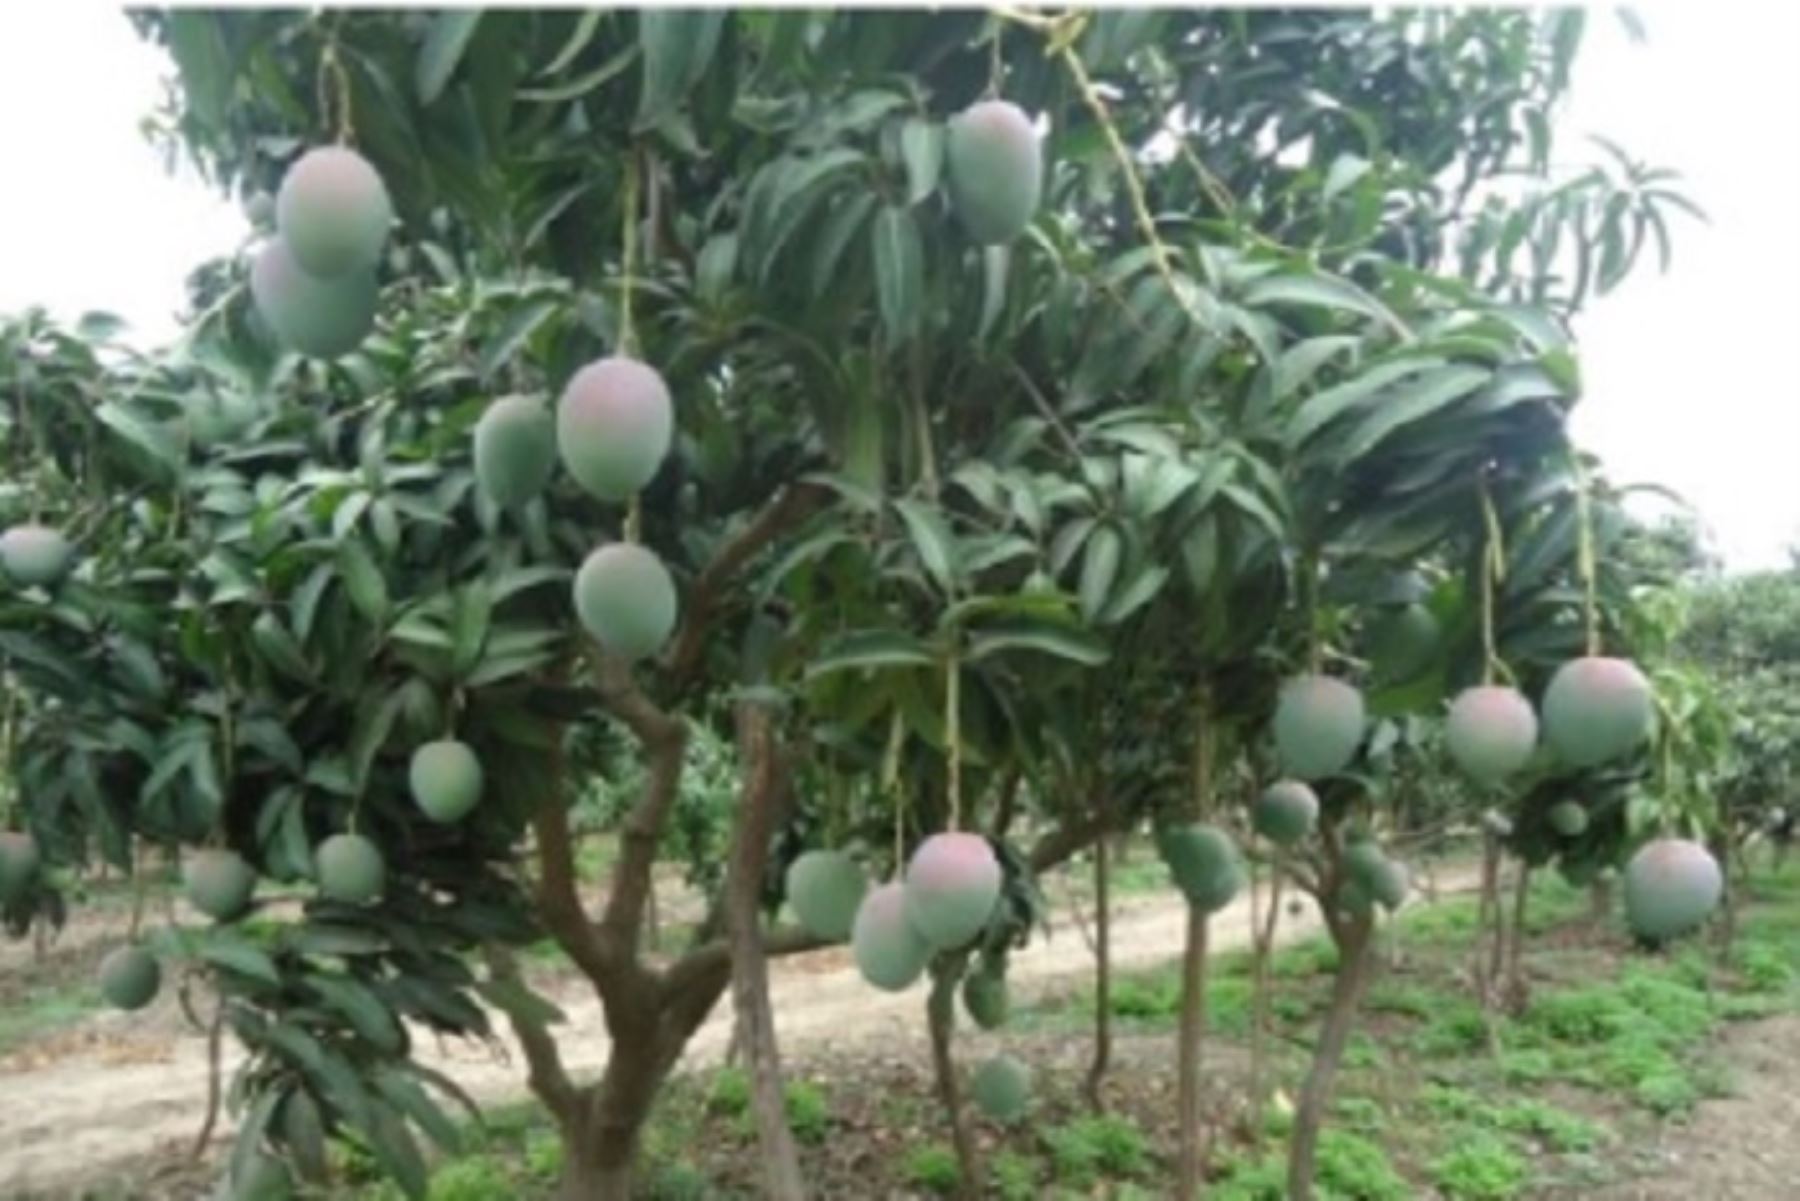 Los reportes agrometeorológicos evidenciaron un aumento de las necesidades hídricas de los cultivos por el exceso de calor, especialmente en los frutales como mango, palto, banano, limón, entre otros cultivos de importancia en la Costa norte.